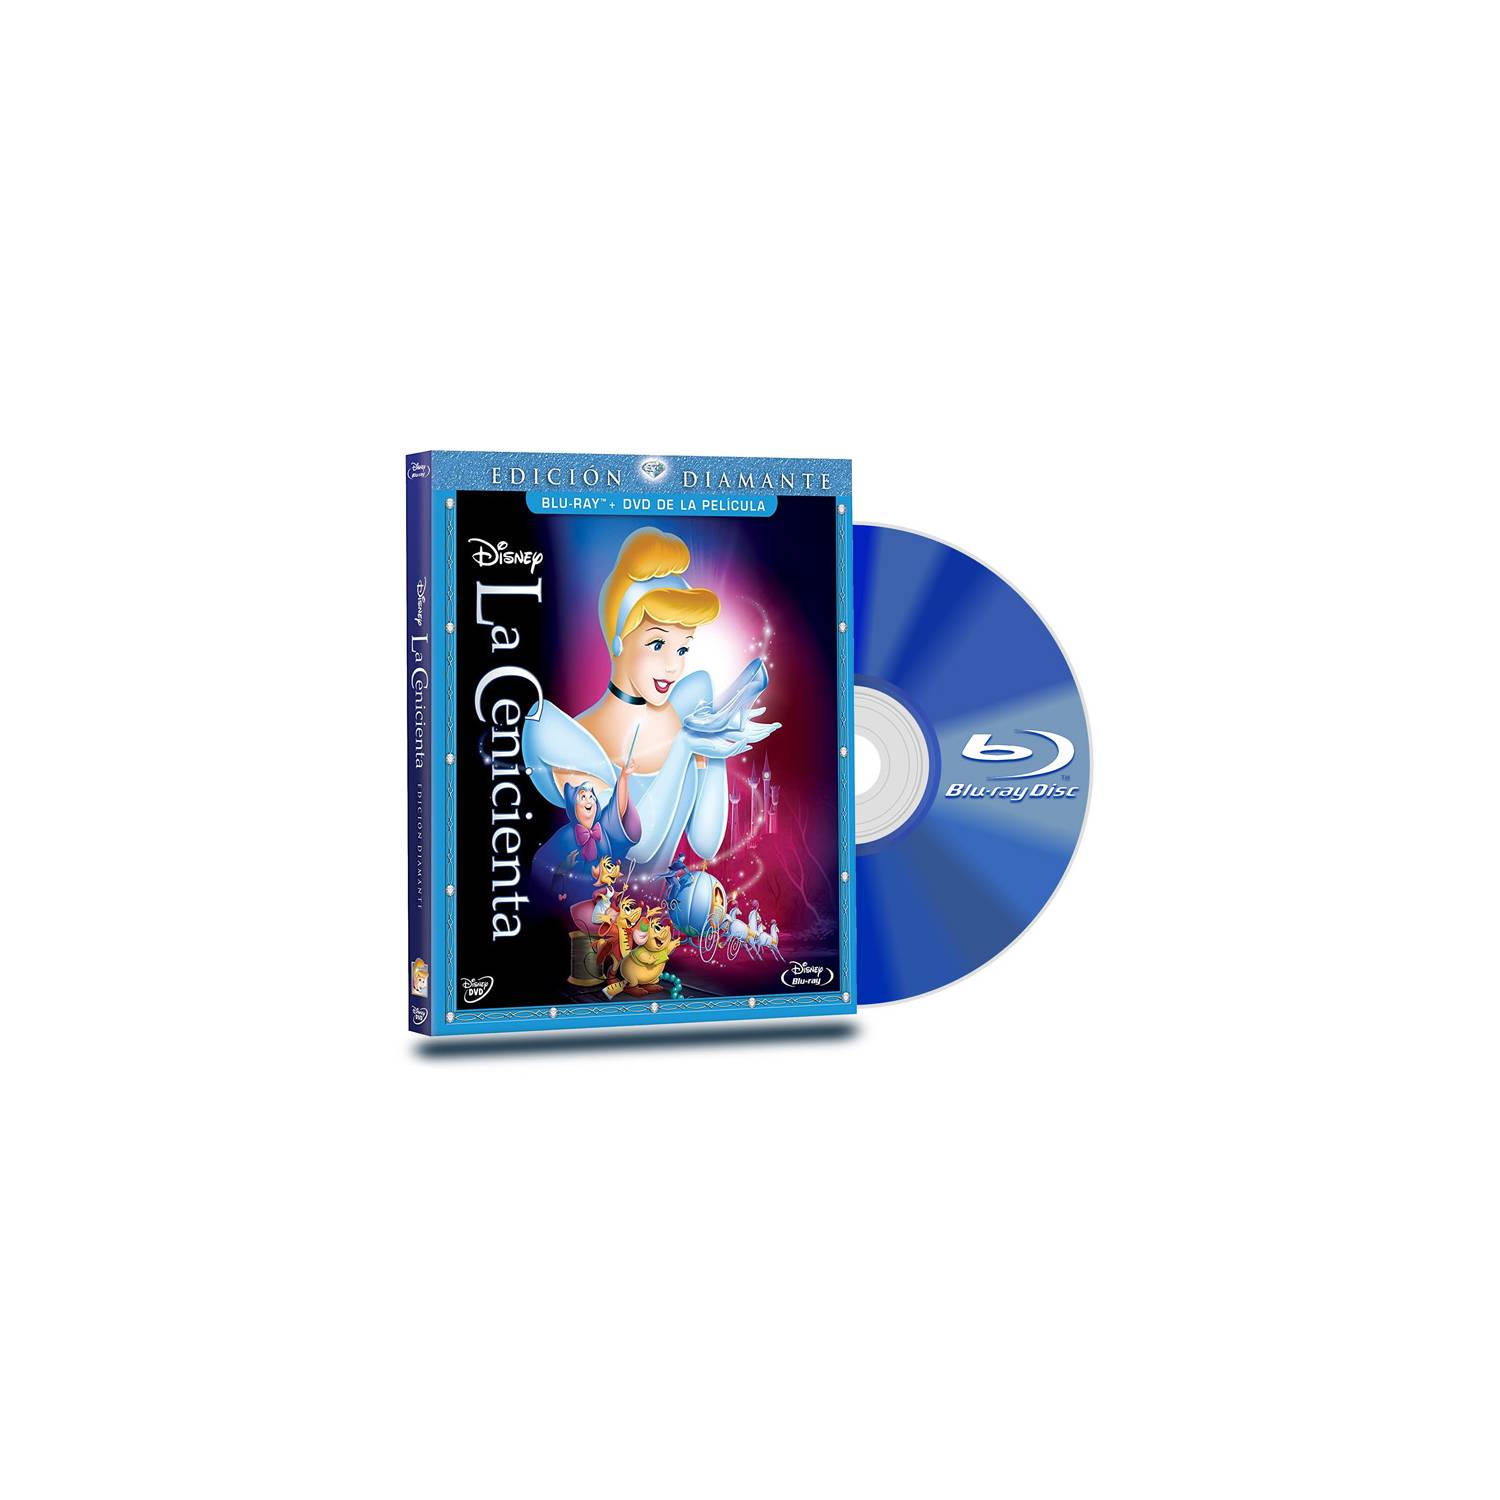 Venta de Peliculas Blu Ray en Guatemala